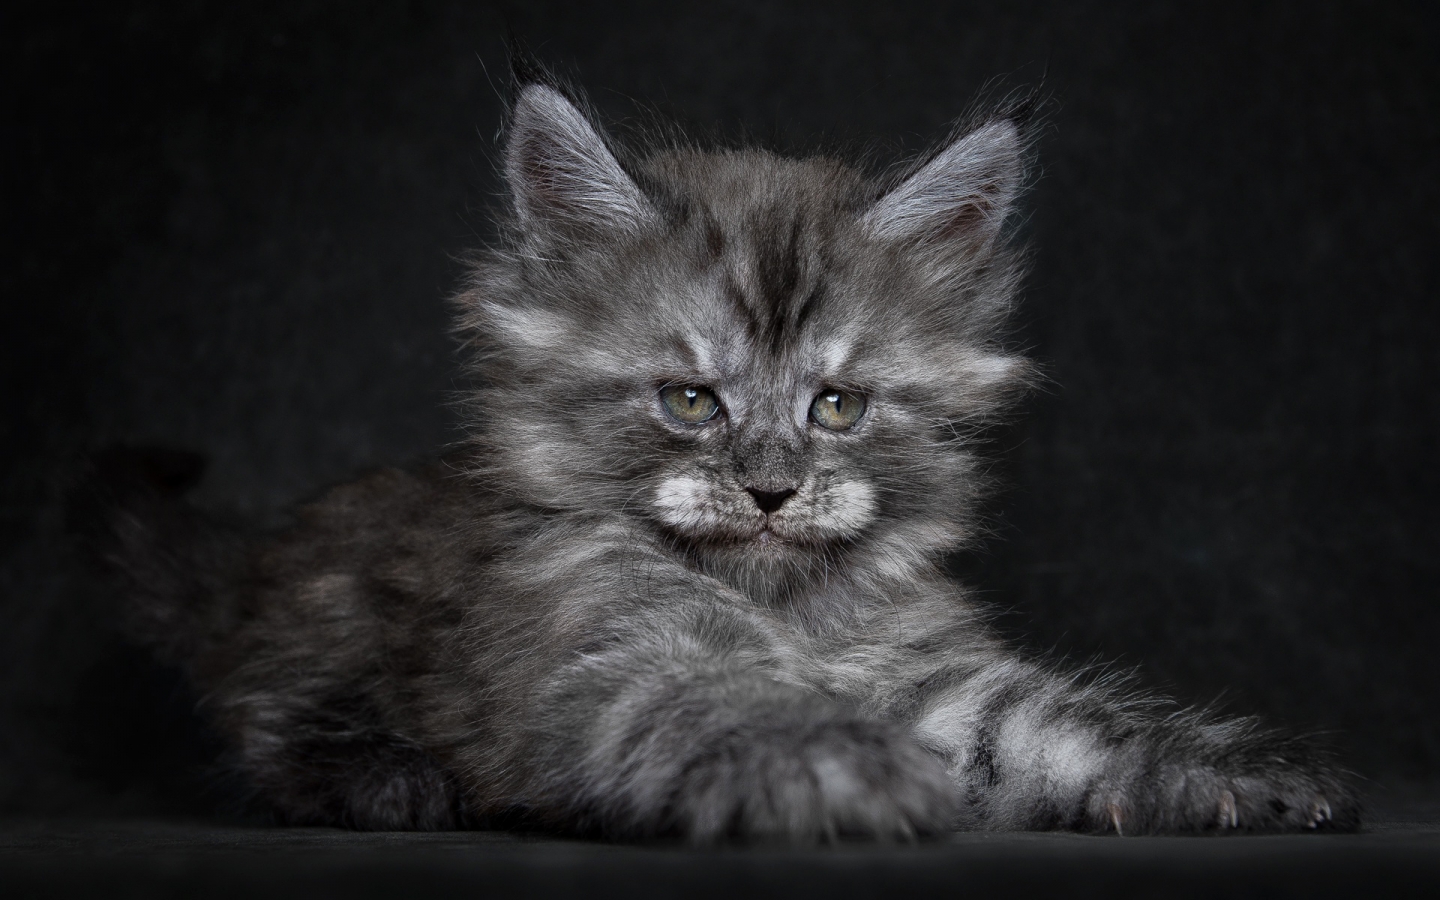 Cute Fluffy Kitten for 1440 x 900 widescreen resolution